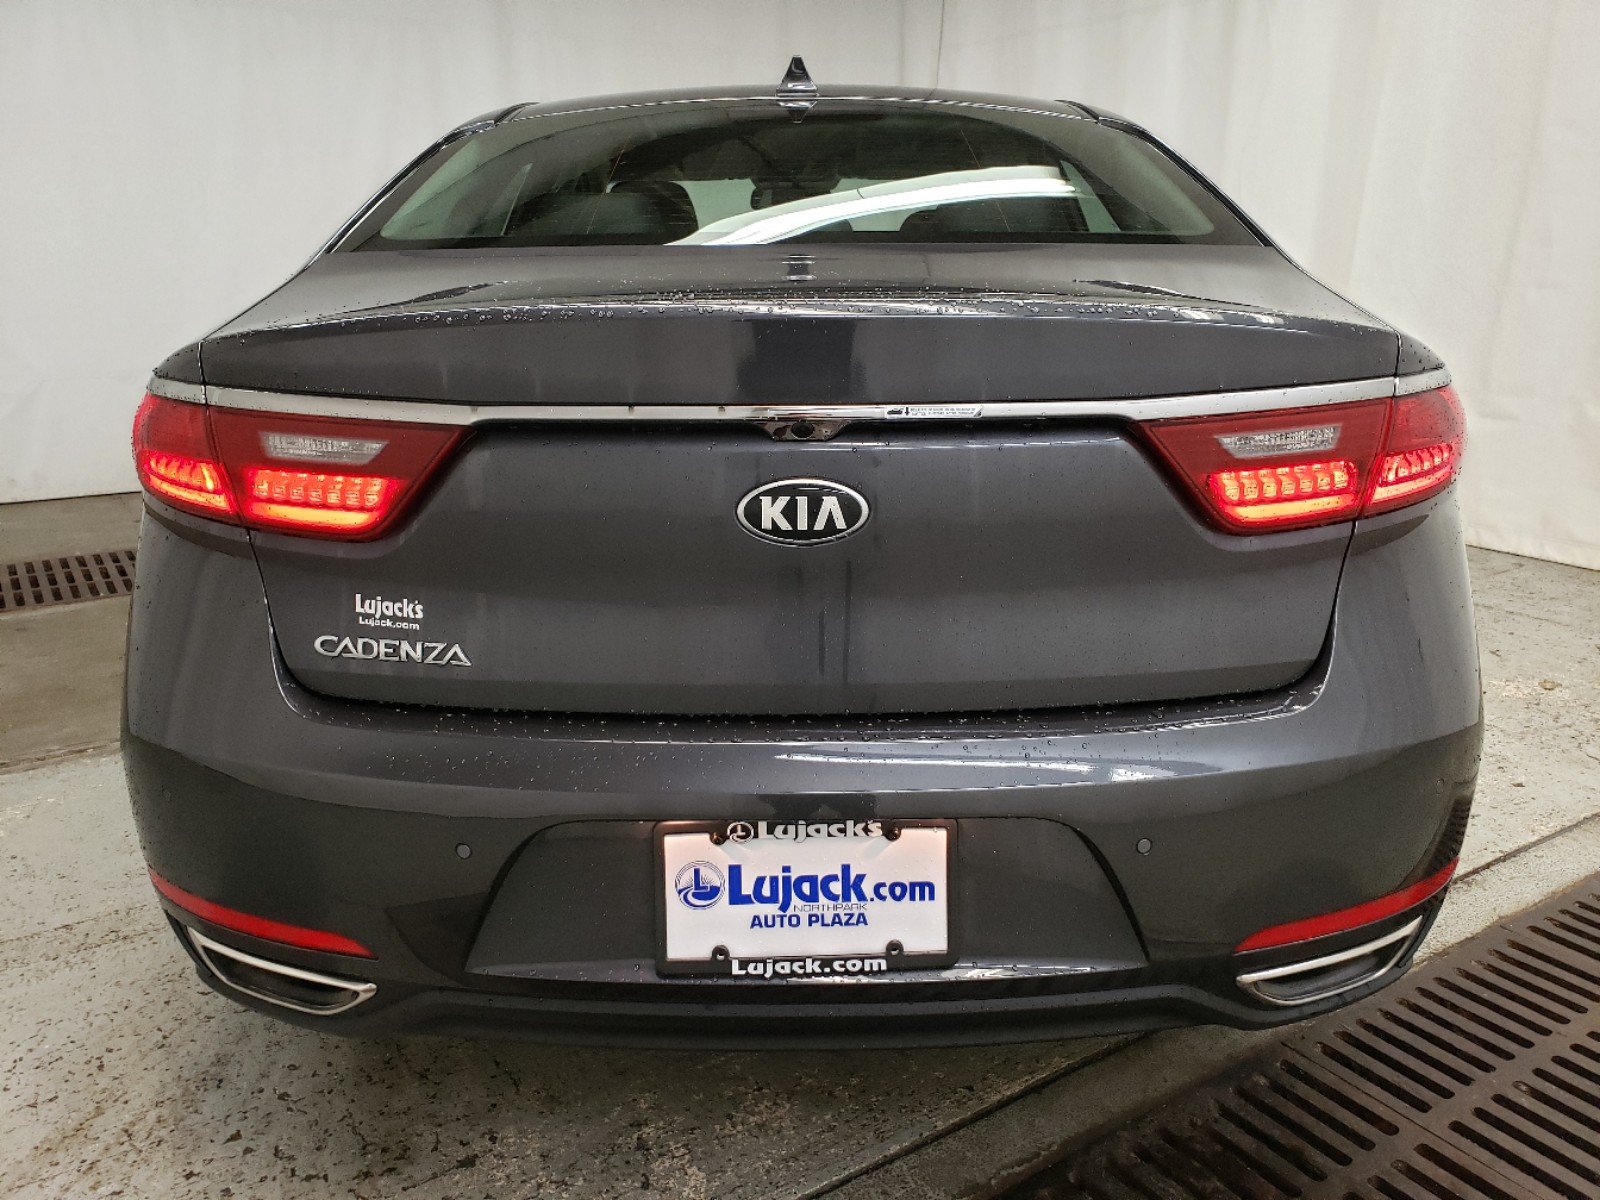 New 2019 Kia Cadenza Premium 4dr Car in Davenport #K16790 | Smart Kia ...